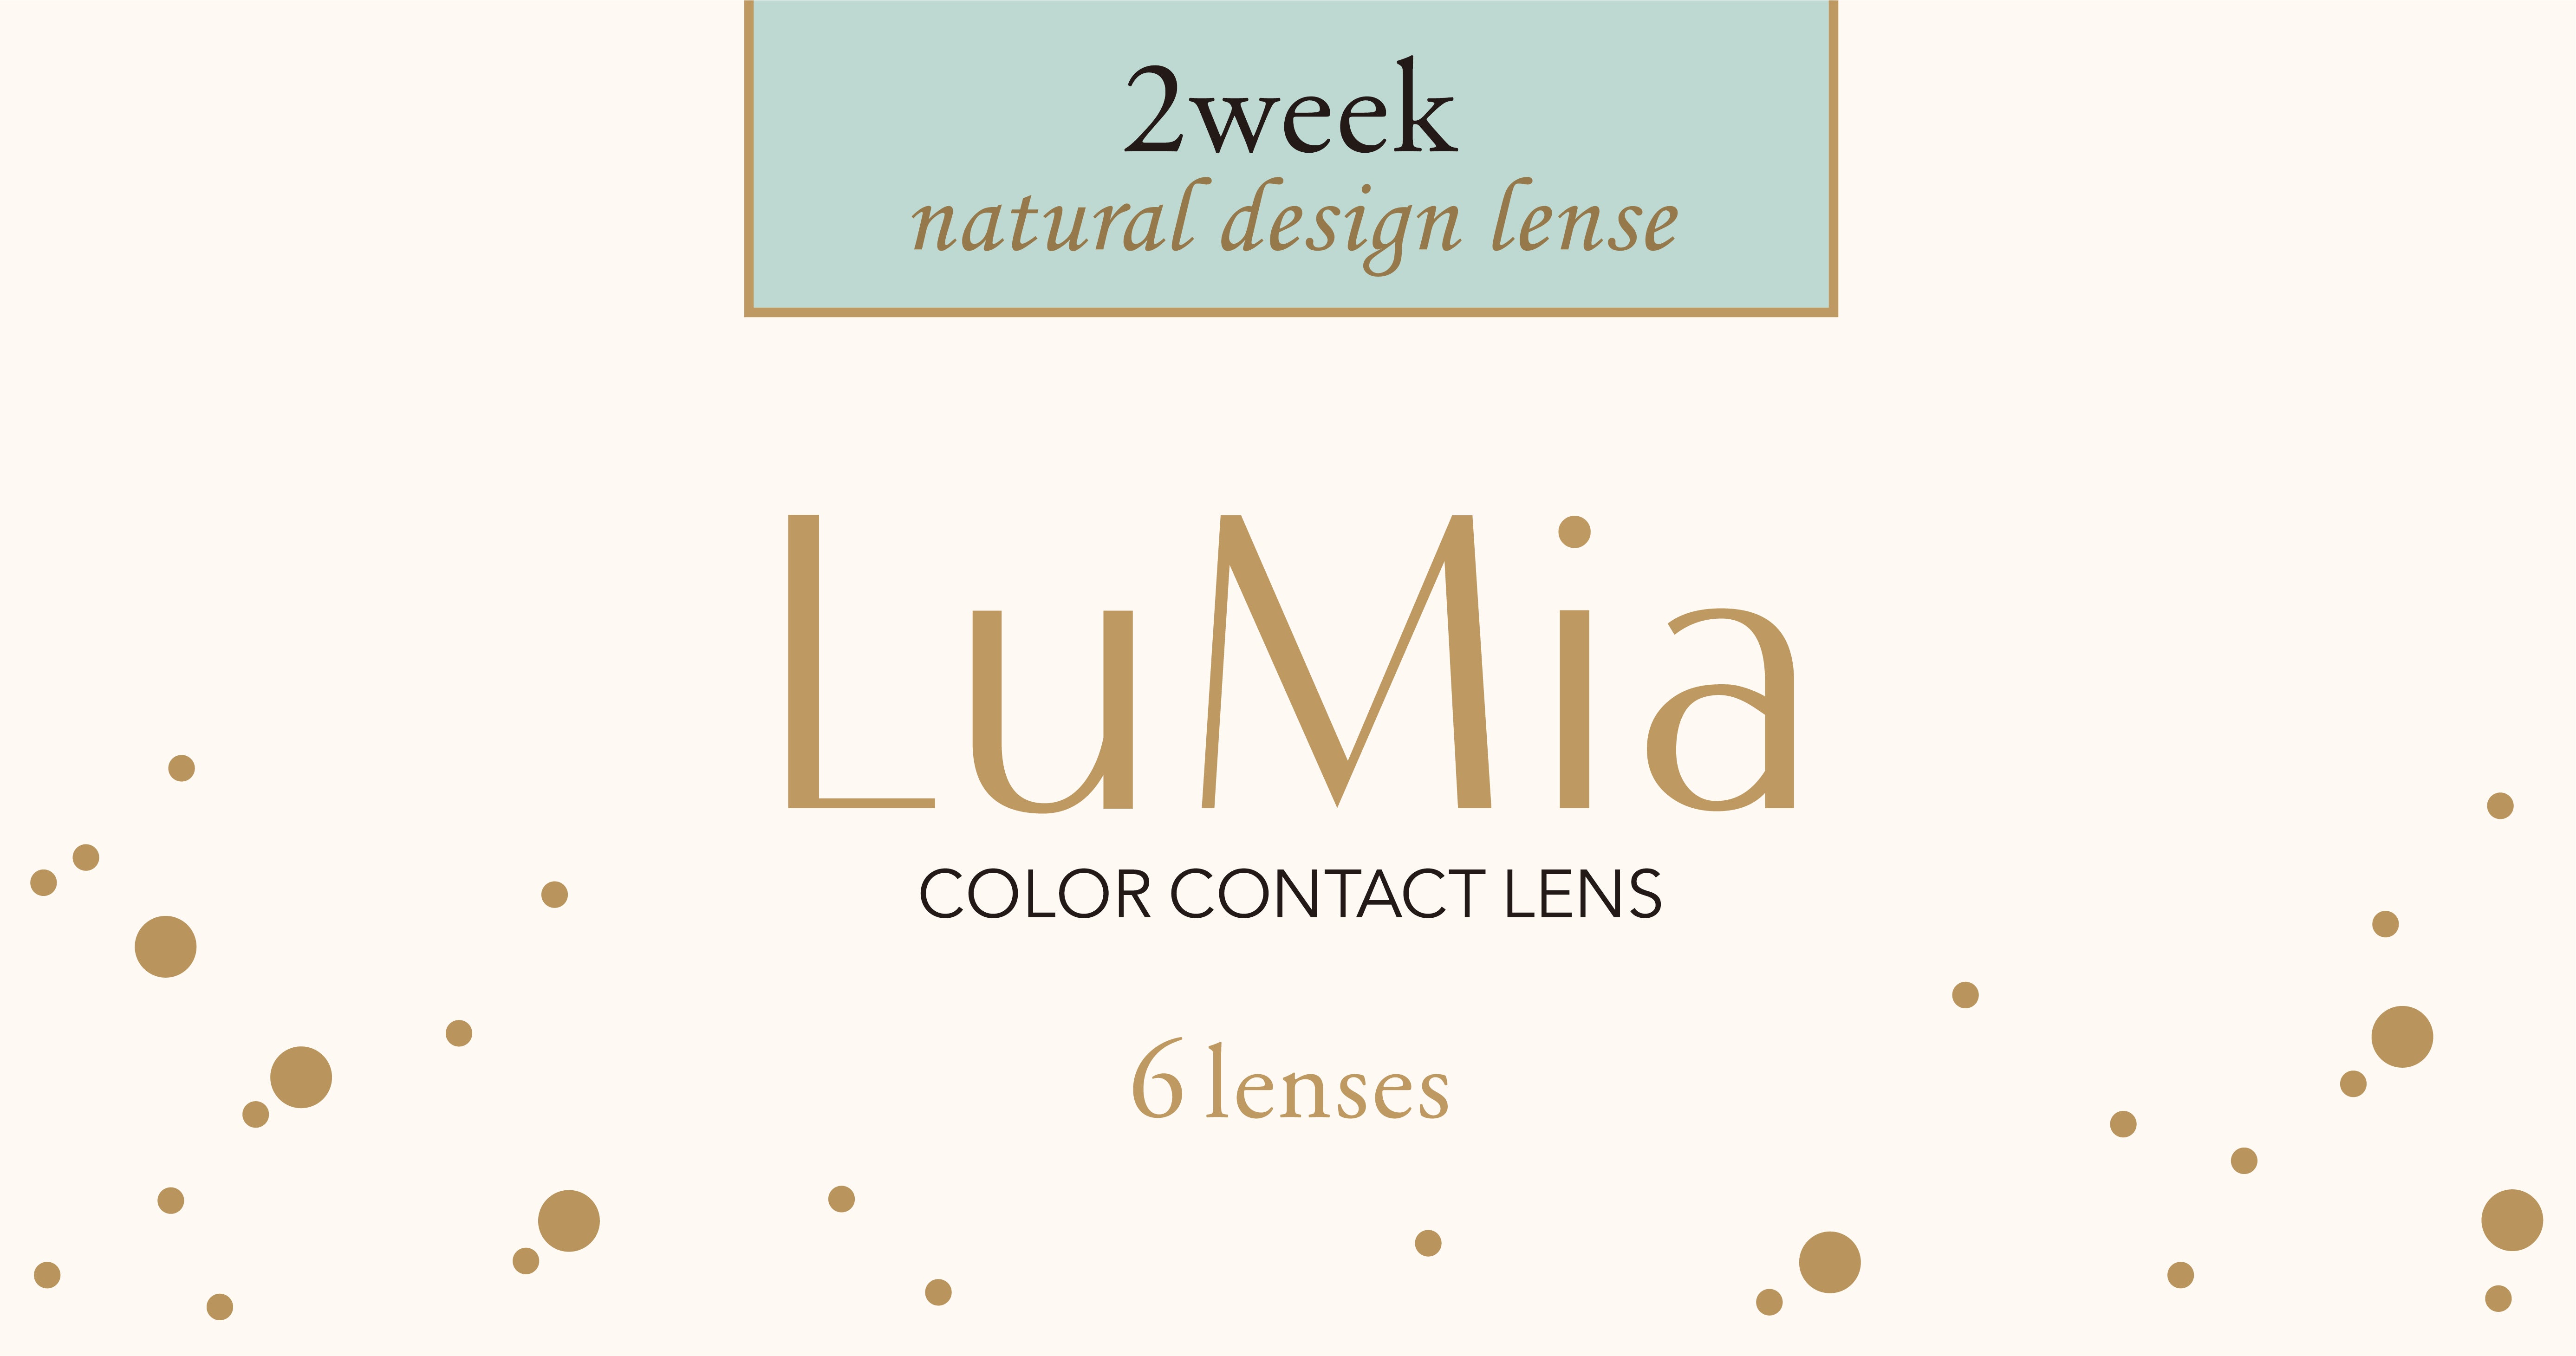 カラーコンタクトレンズ、LuMia シフォンオリーブ UV | 2weekの追加の参考画像4枚目